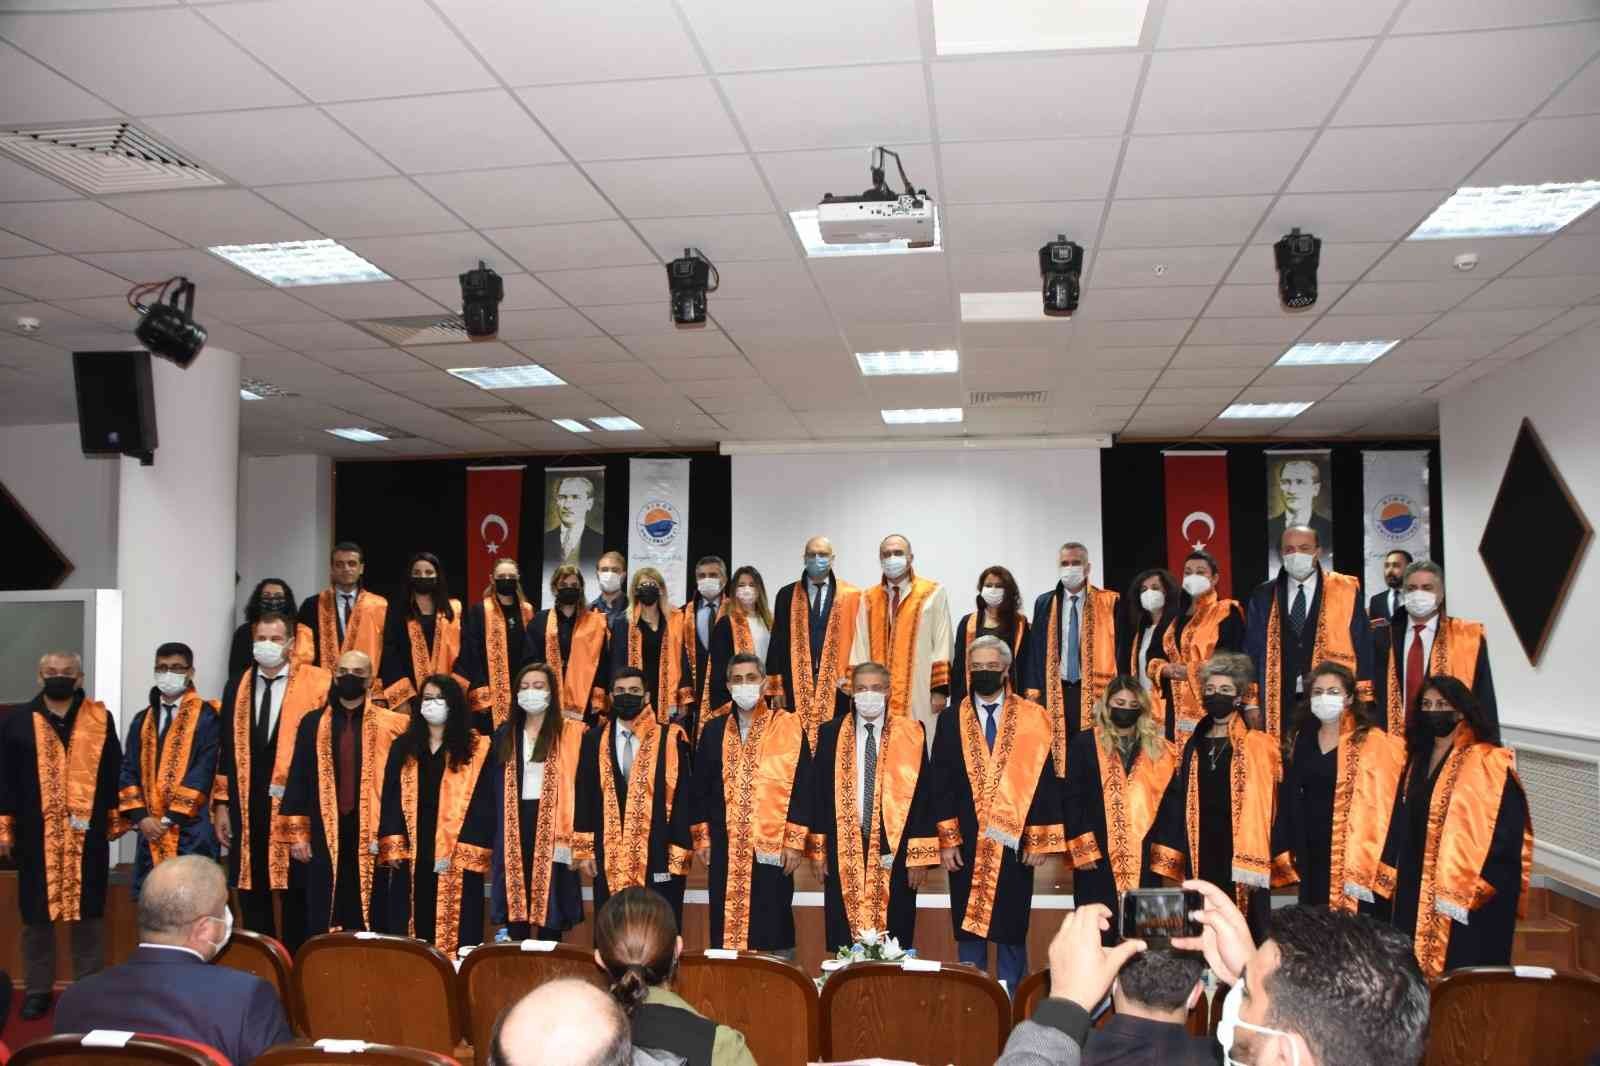 Sinop’ta akademik yükselme ve biniş giydirme töreni #sinop